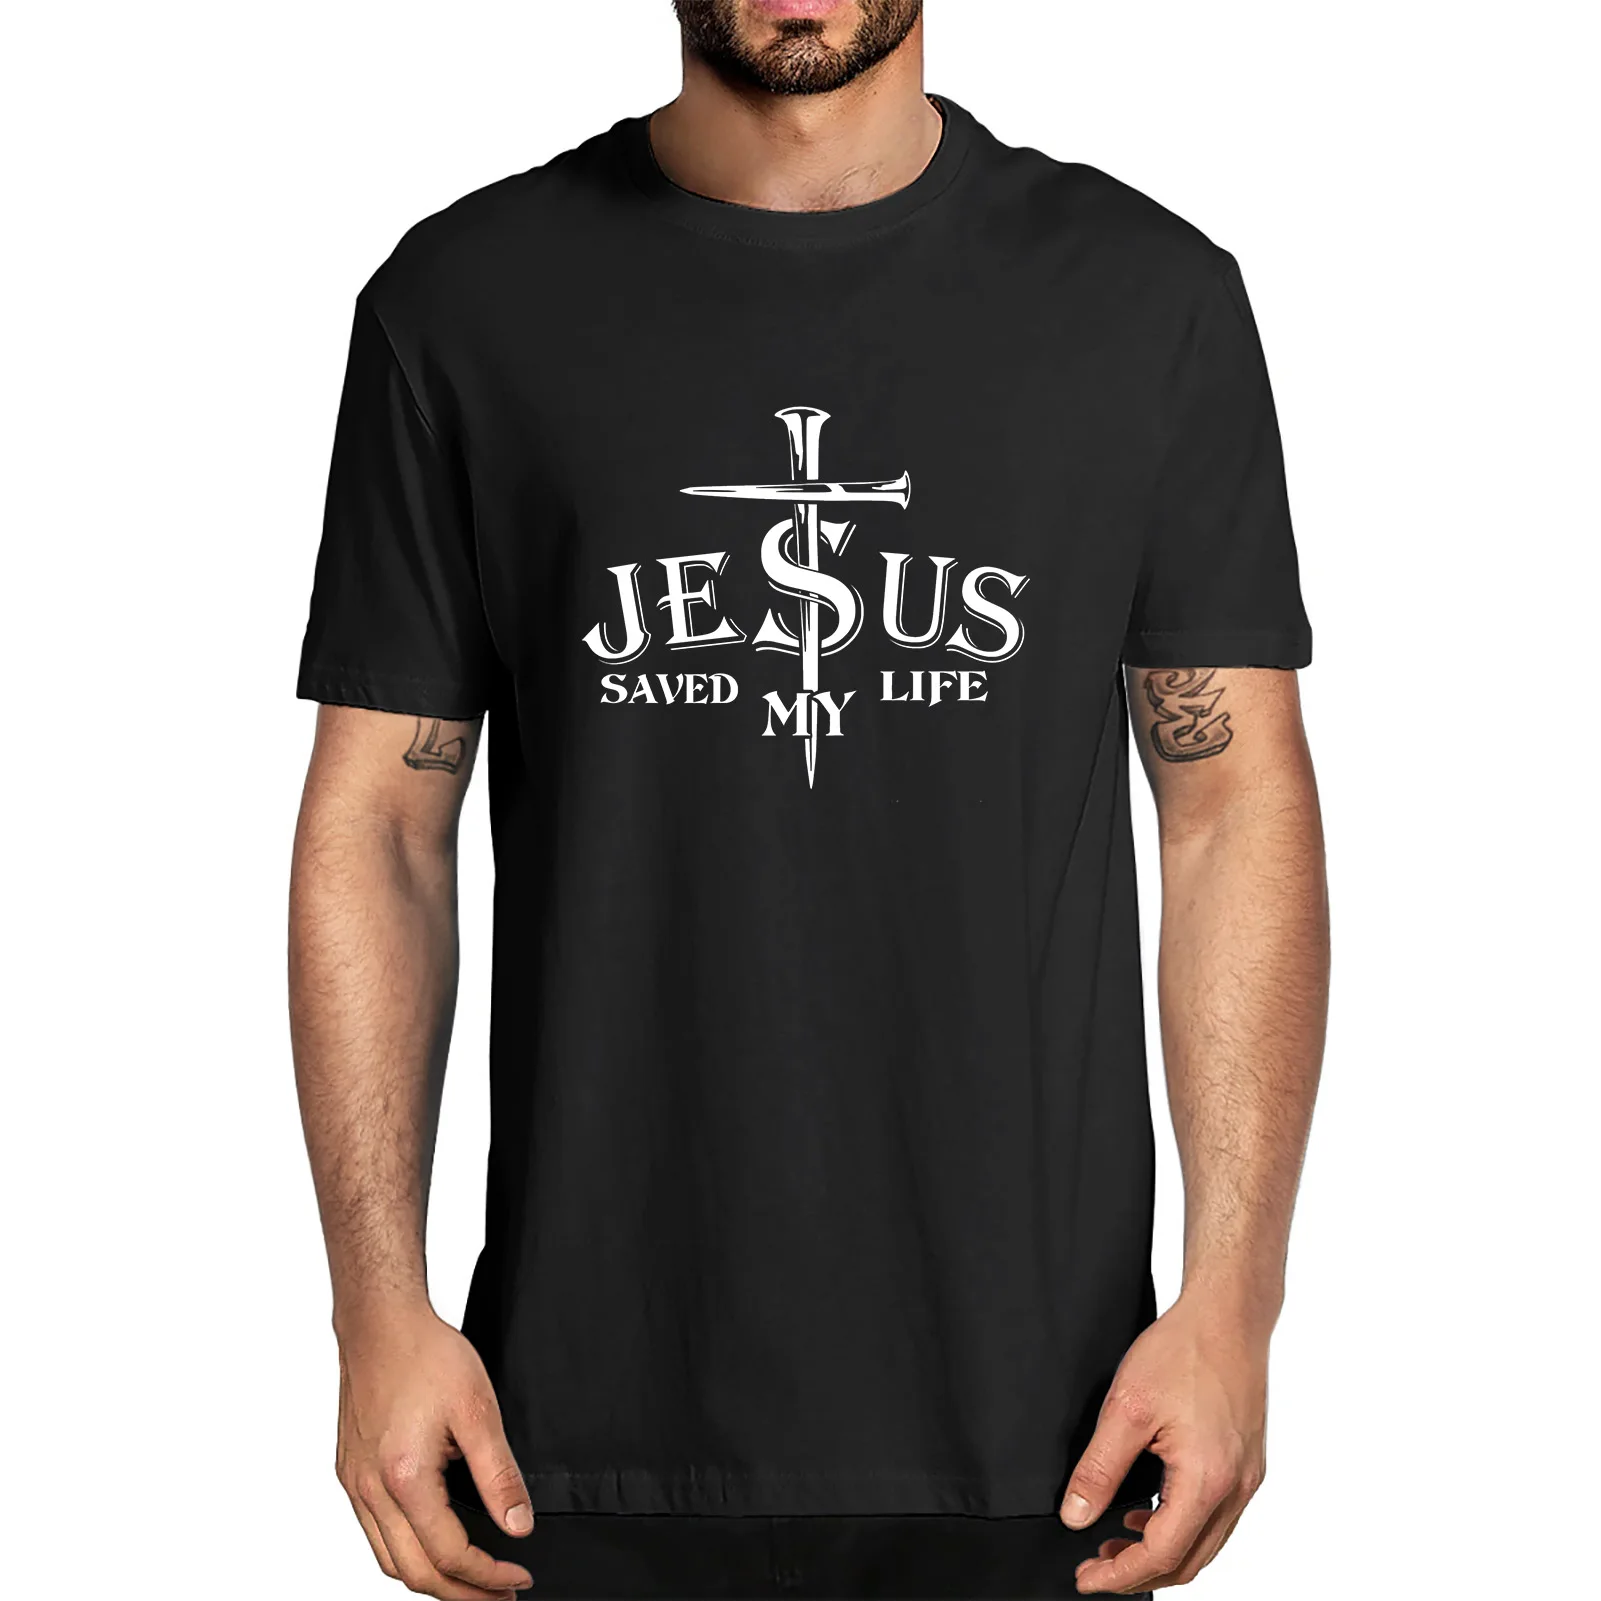 

Мужская футболка из 100% хлопка, с принтом Иисуса спасла мою жизнь, Джона 3:16